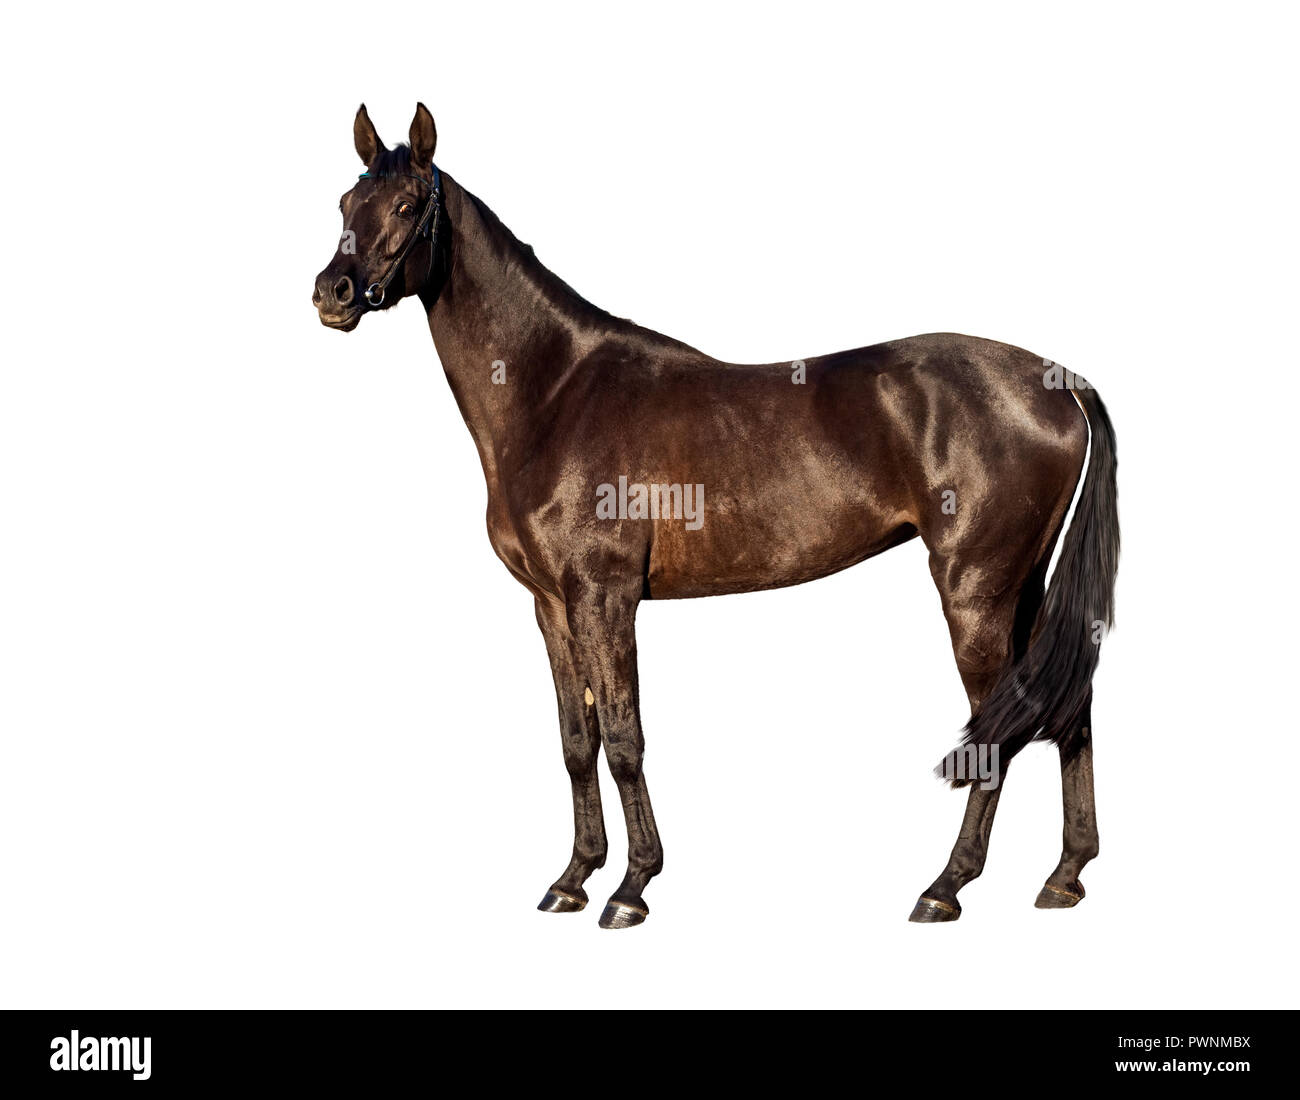 Portret de jeunes bay horse isolé sur fond blanc Banque D'Images